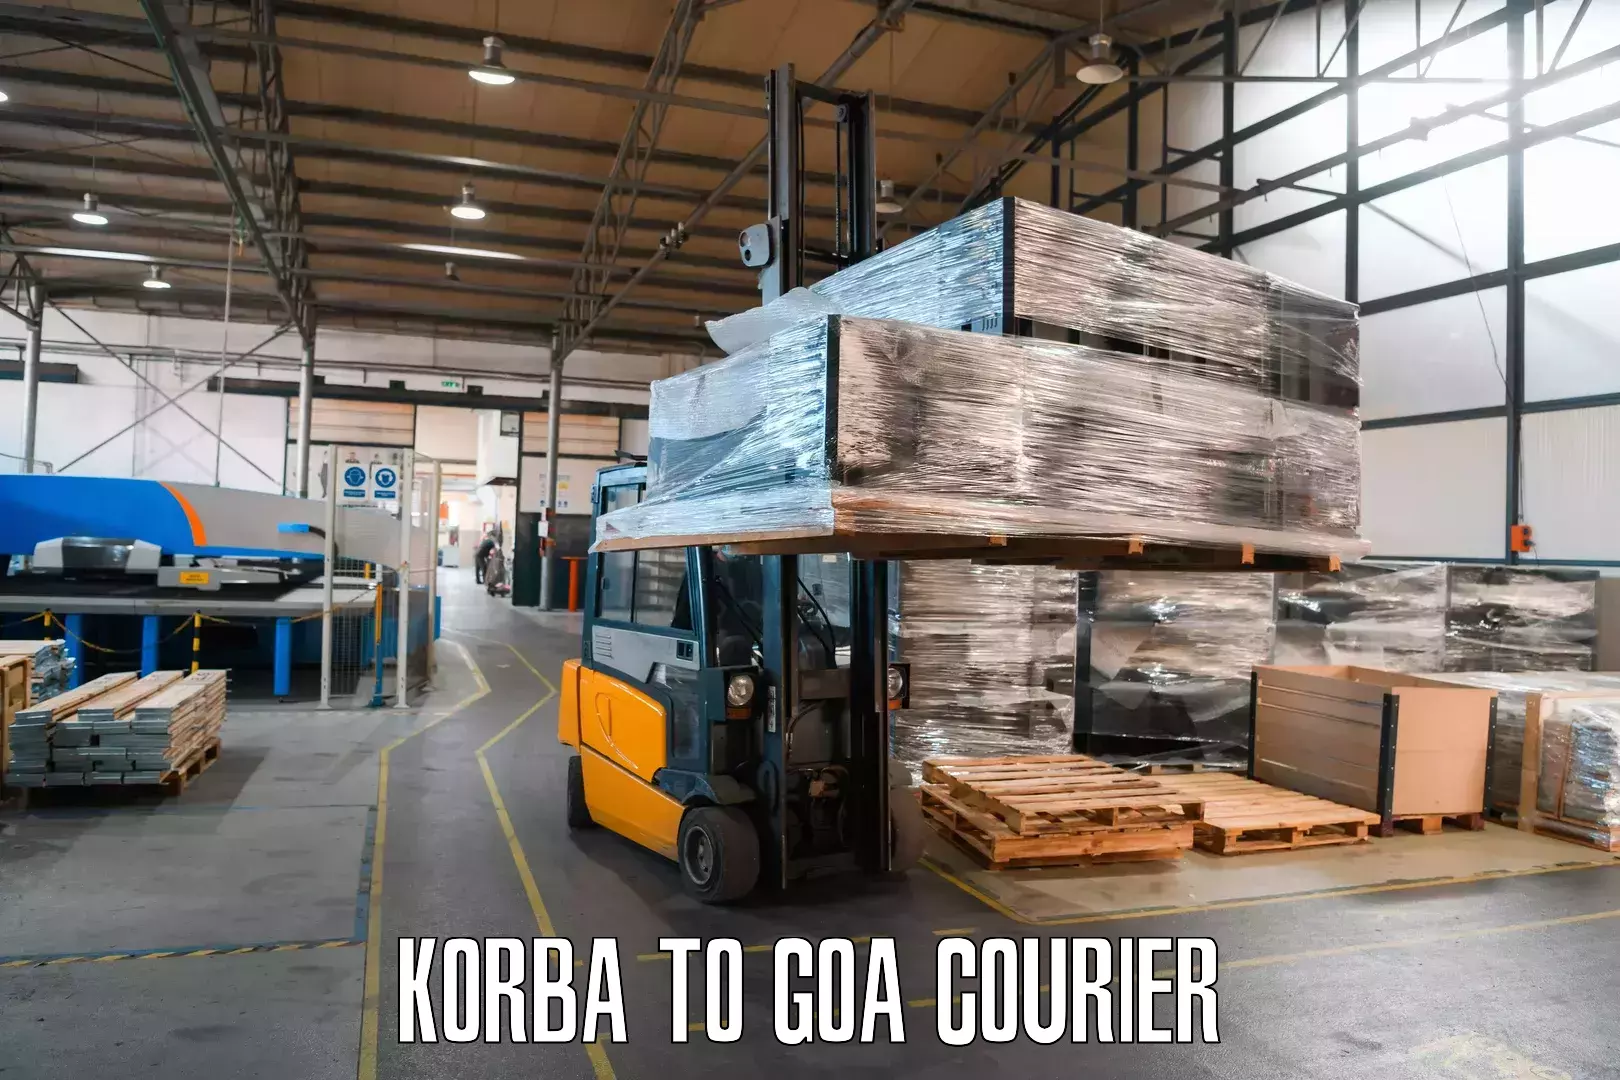 Courier app Korba to Panaji